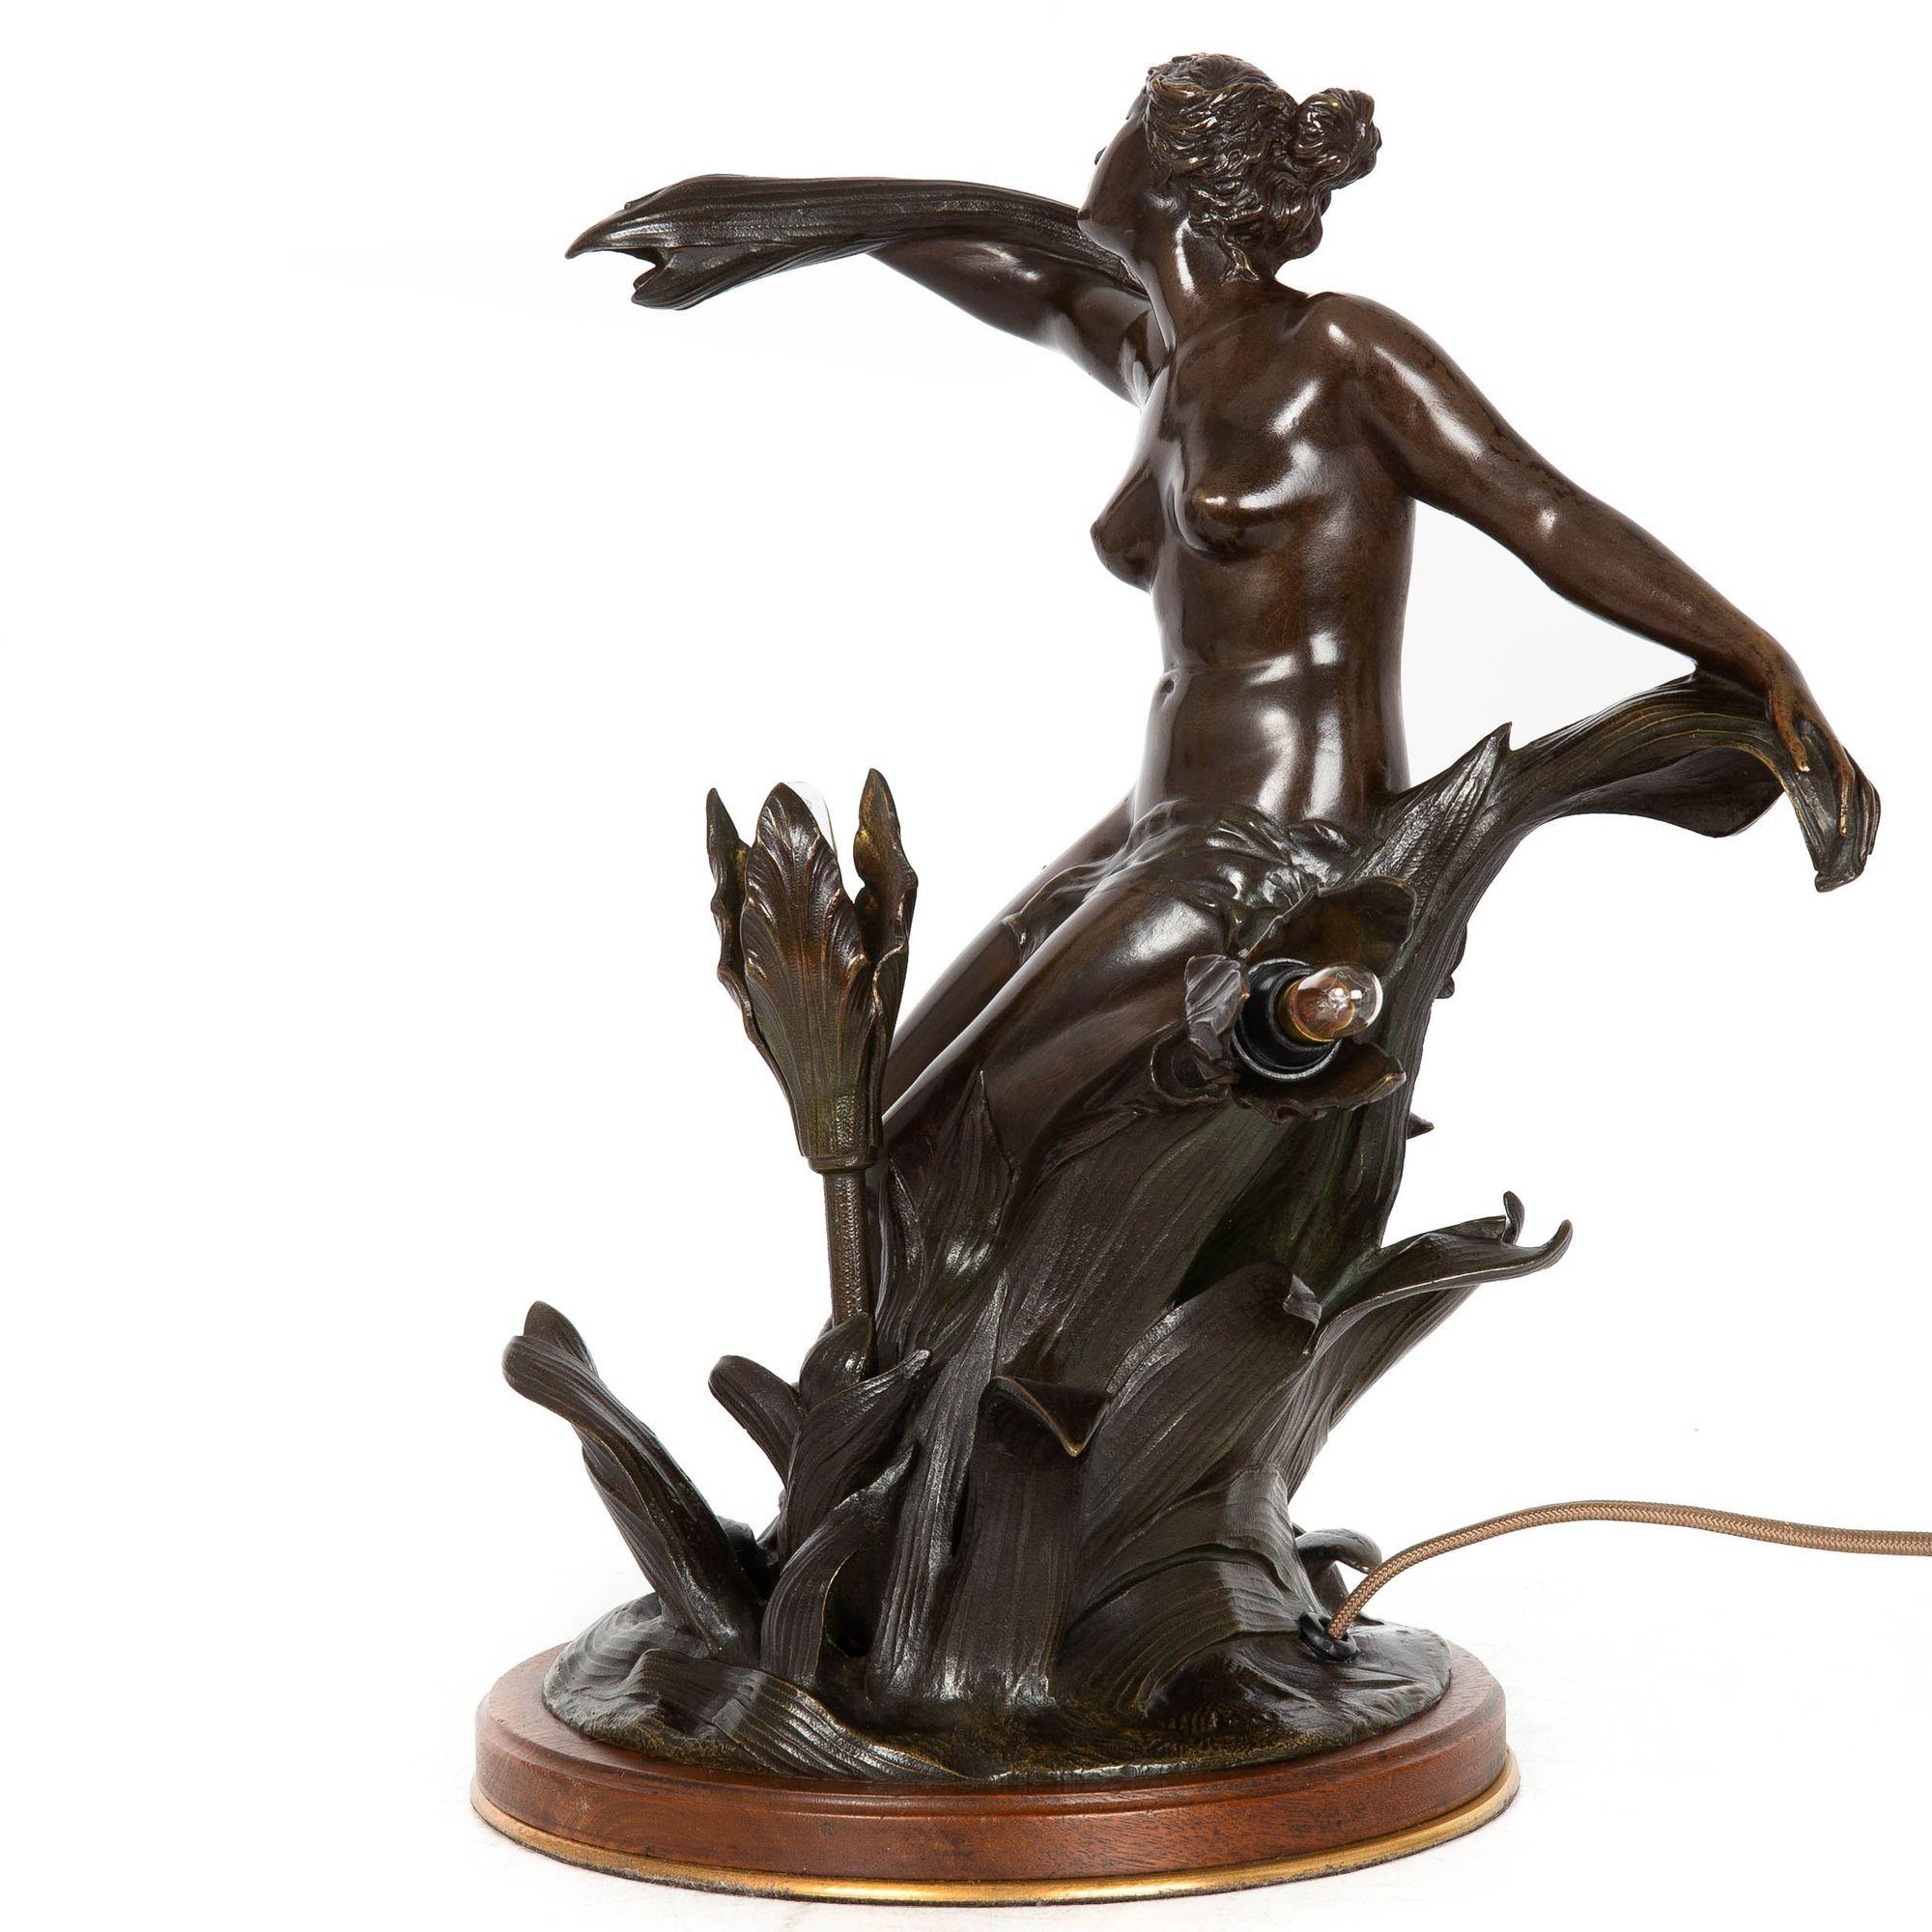 L'ECOLE FRANCAISE
Début du 20e siècle

Lampe de table représentant une jeune fille entrelacée de fleurs

Bronze patiné  situé sur un socle en noyer d'origine  non signé

Référence 212MOL15P 

Cette lampe de table fluide et sensuelle, entièrement